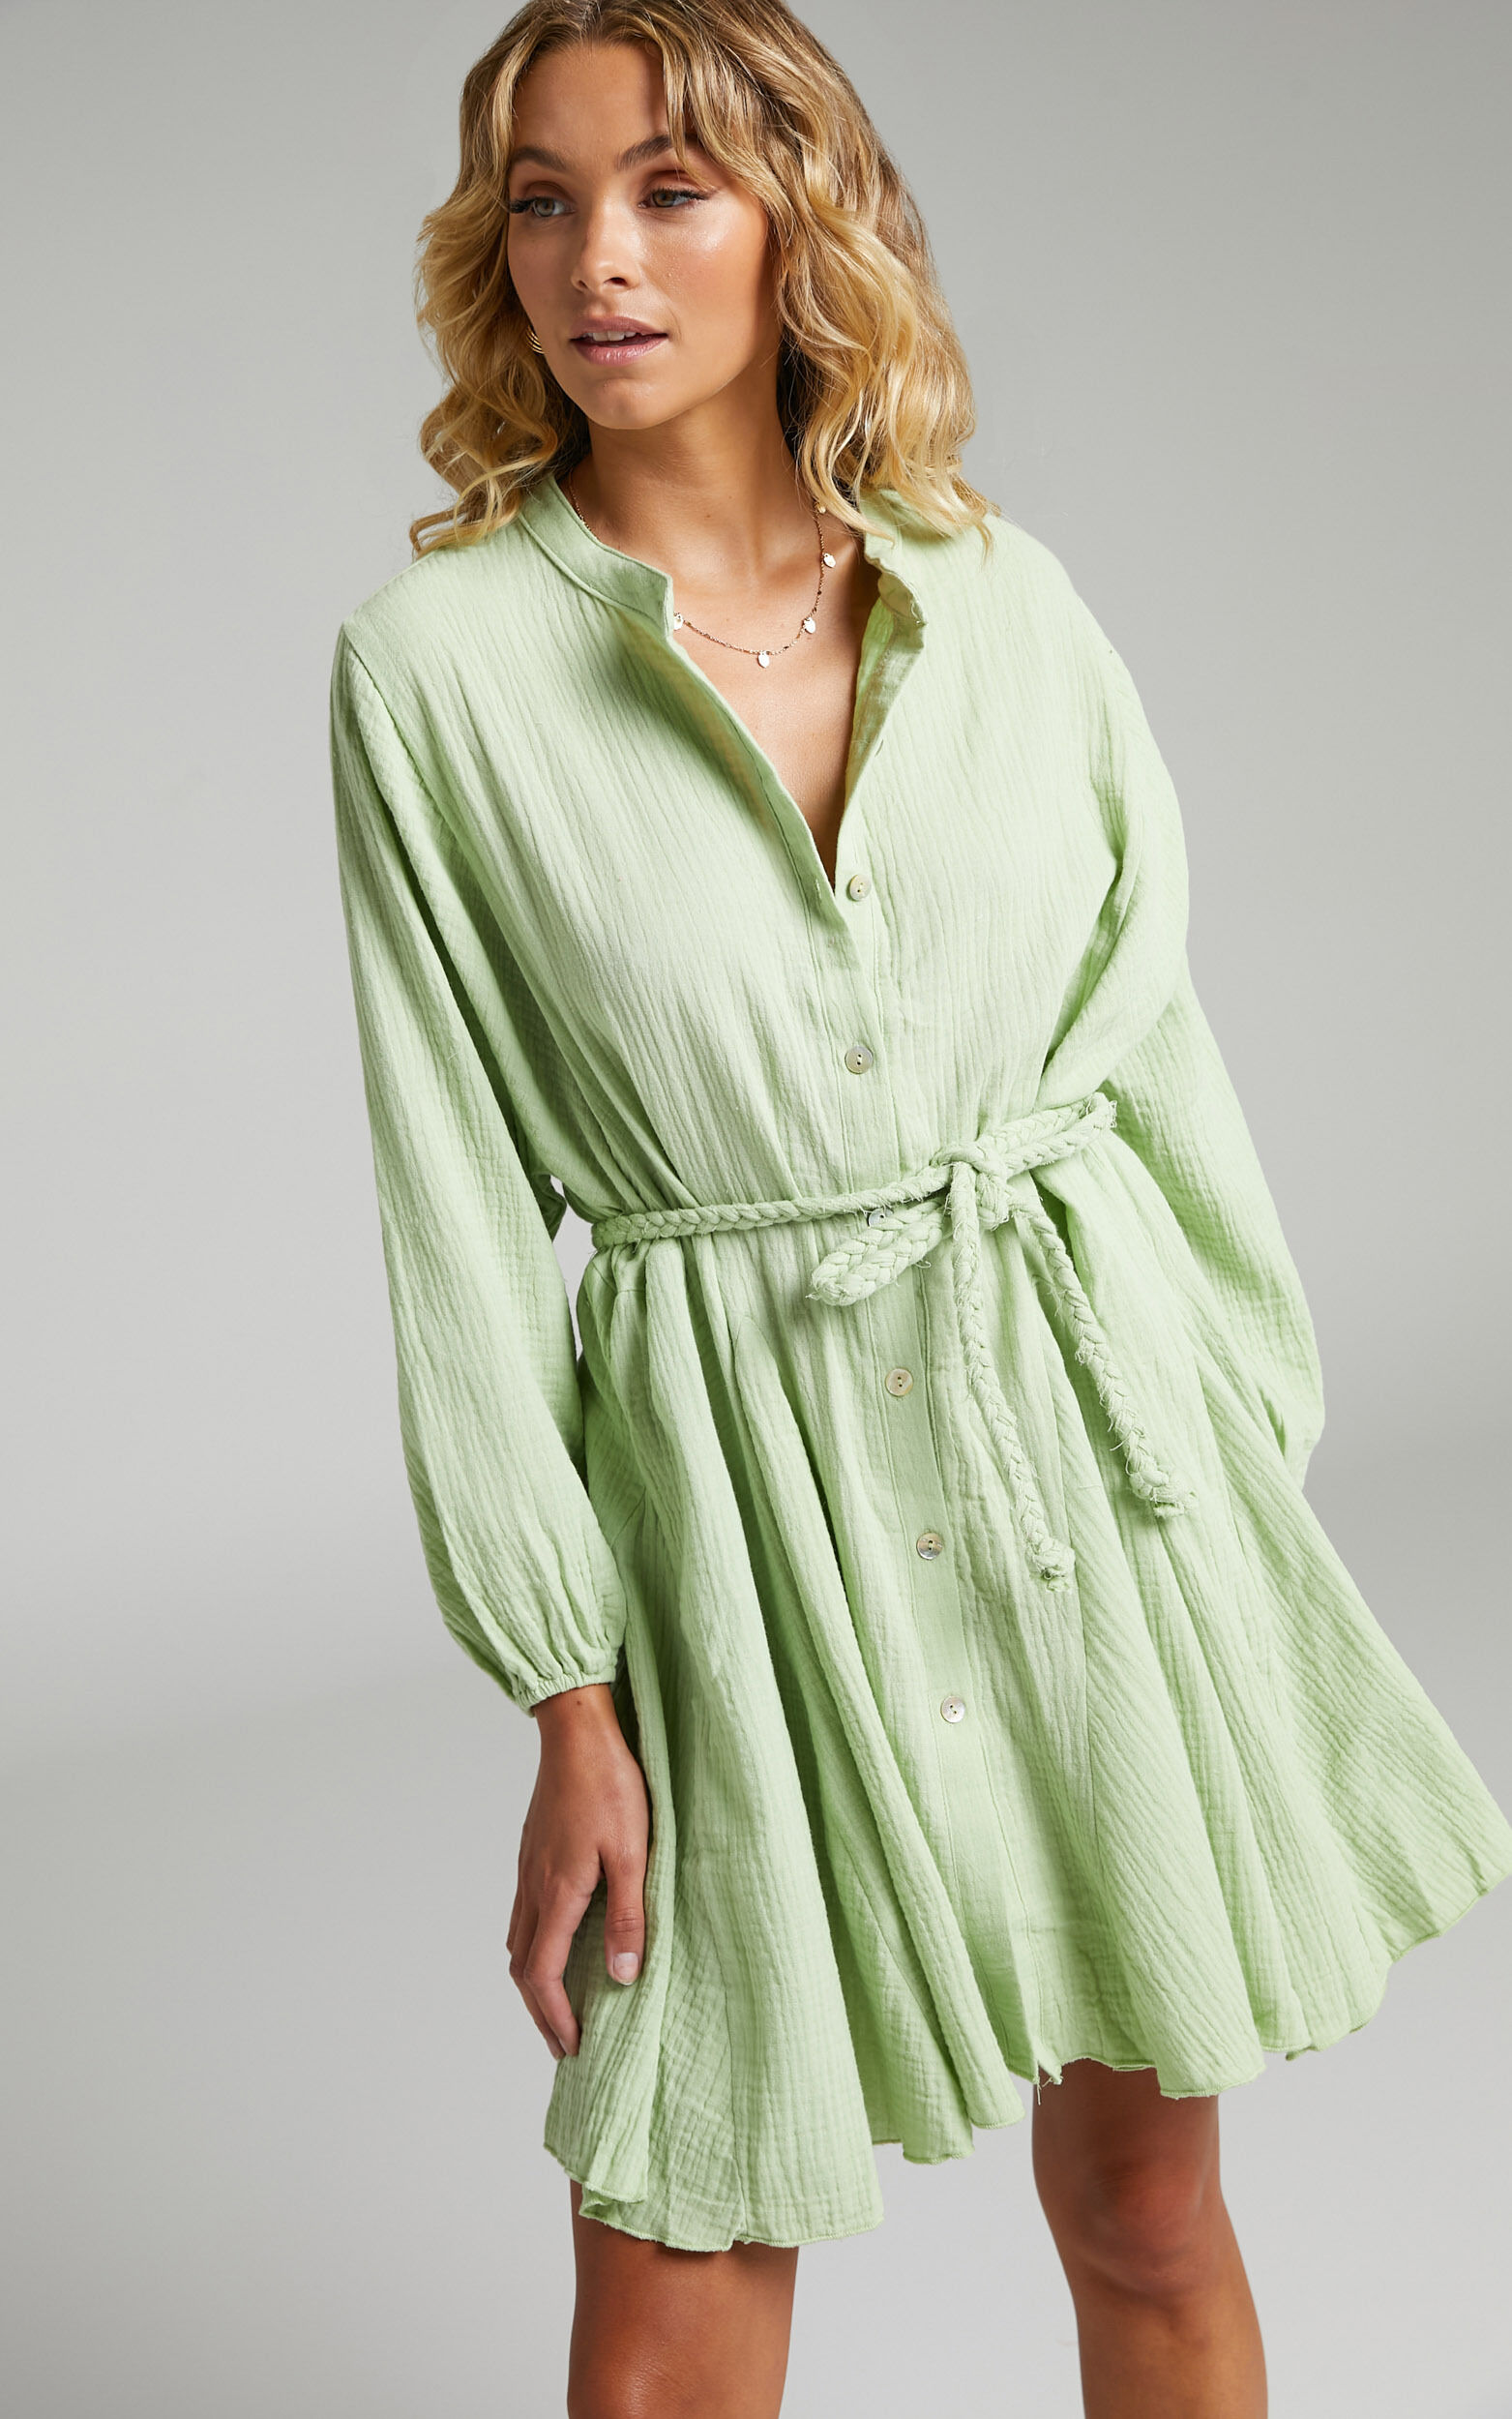 Raphaelle Mini Dress - Long Sleeve Button Up Dress in Green - 04, GRN2